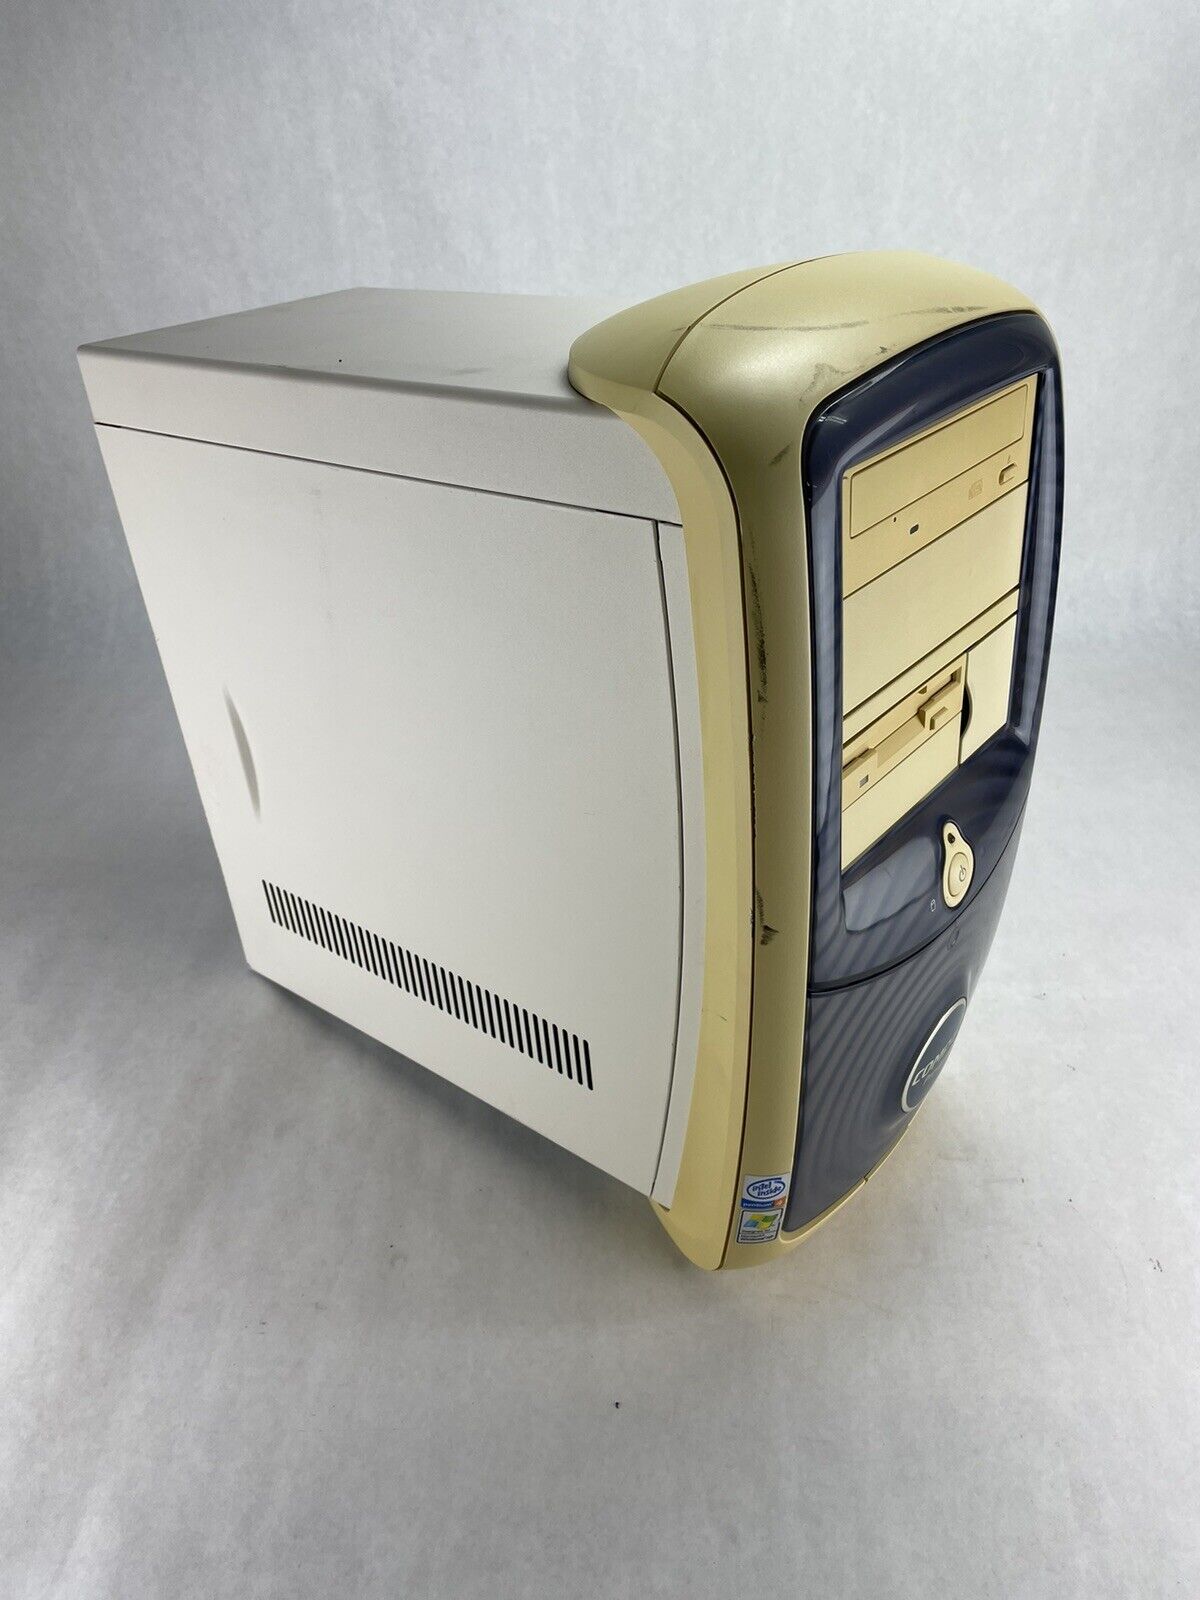 Compaq Presario 5000 MT Intel Pentium 4 1.5GHz 256MB No HDD No OS